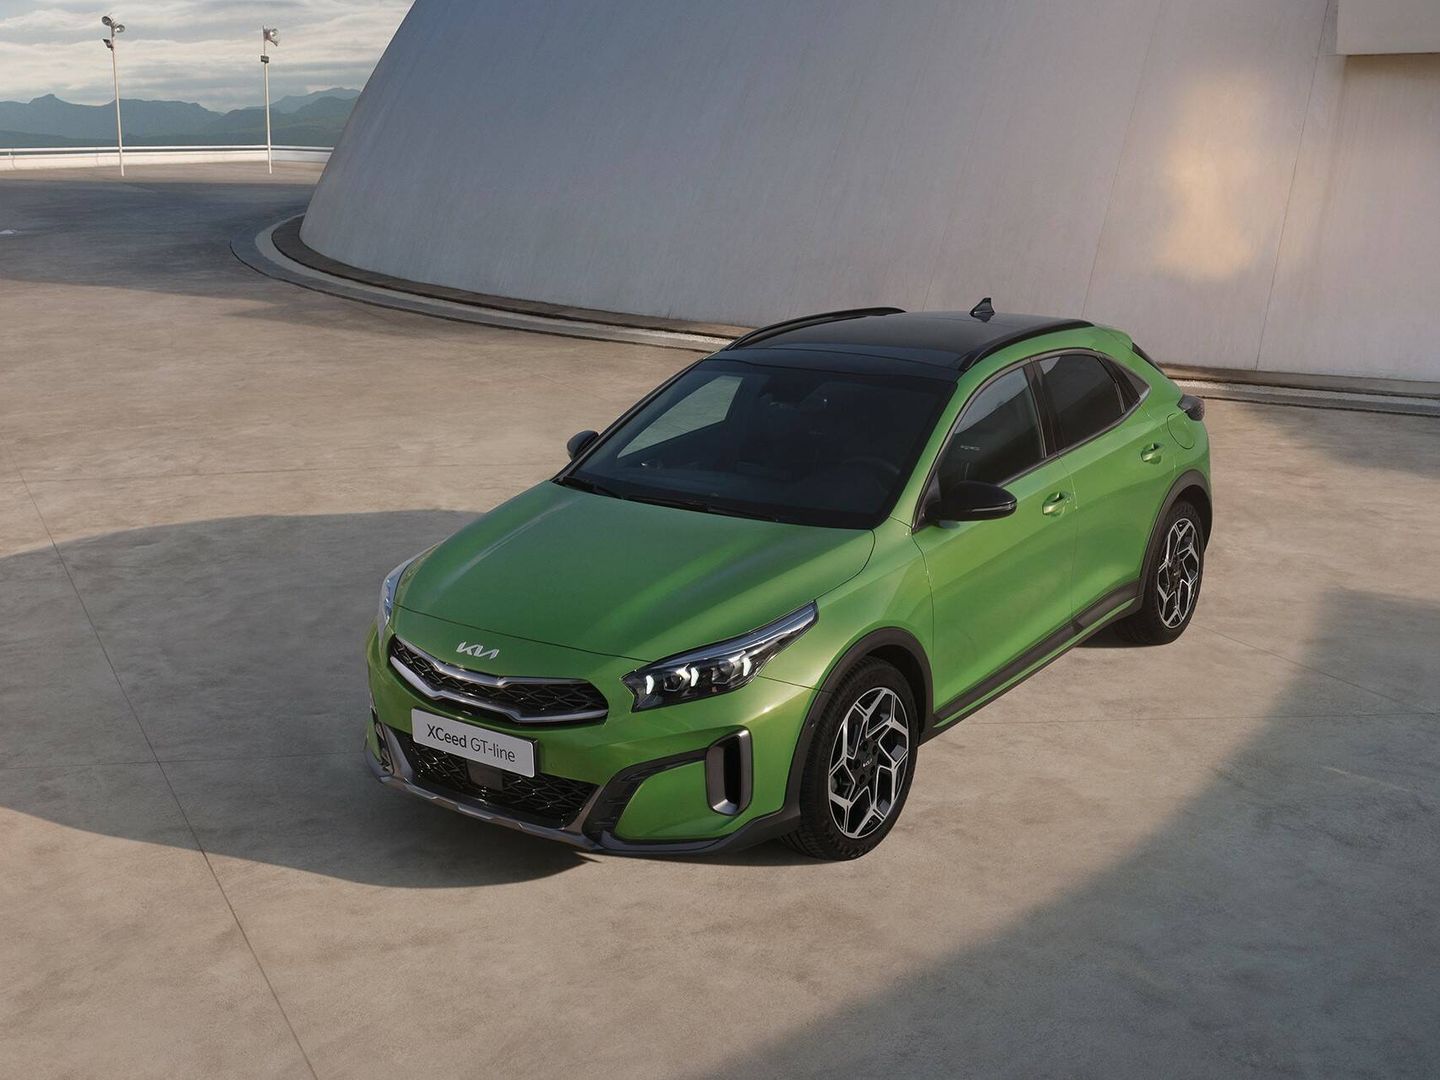 Tres nuevos colores de carrocería nuevos, incluido el verde Celadon Spirit Green de la foto.